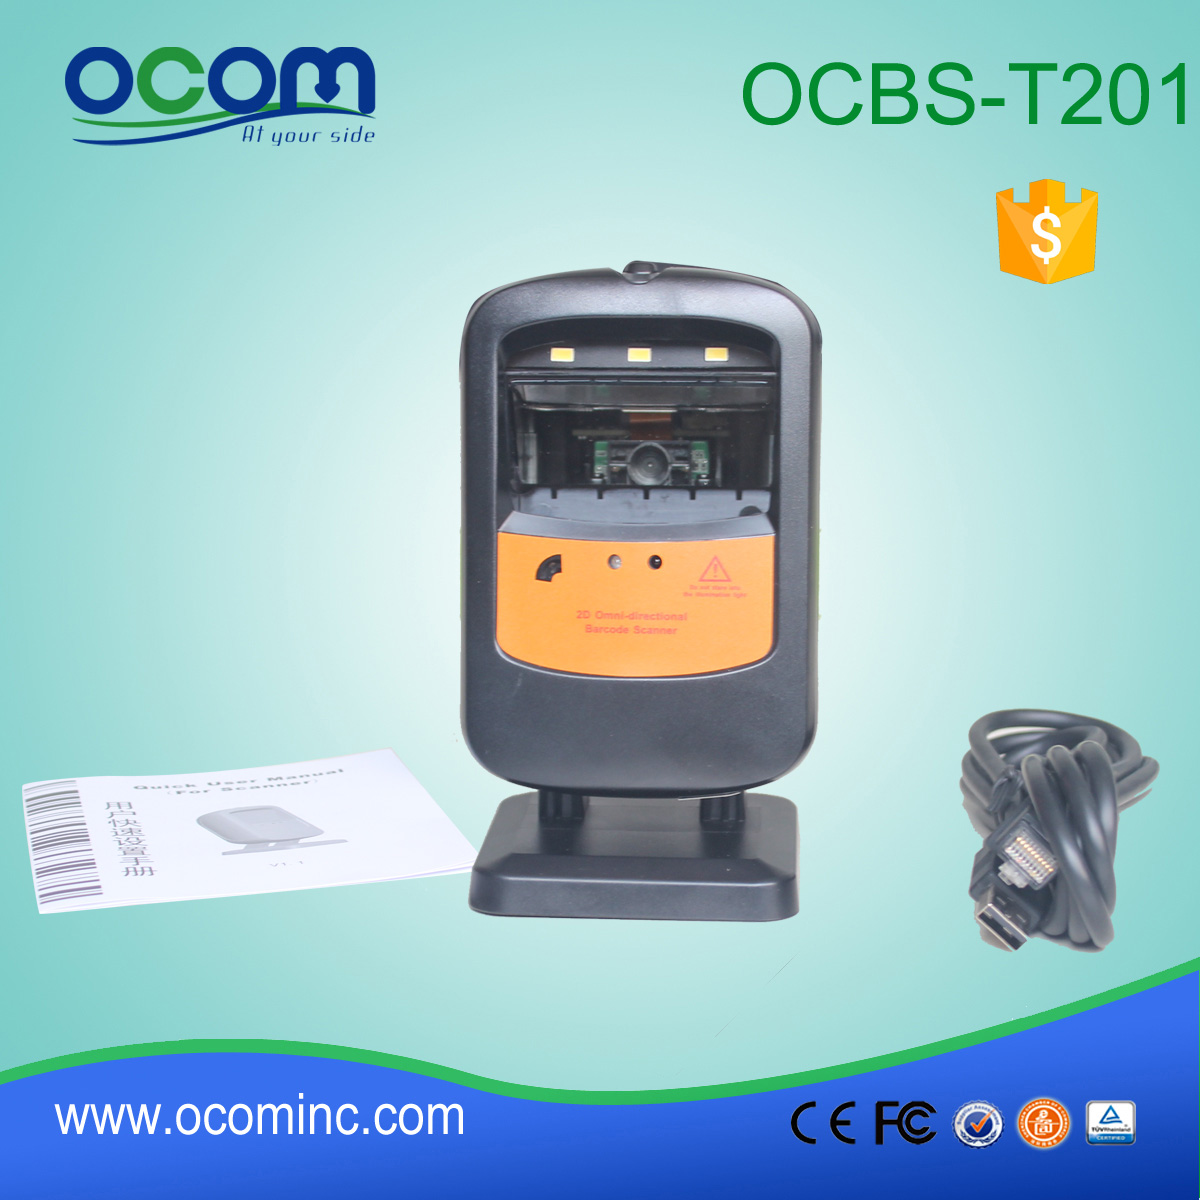 2015年最新2D immaging条形码扫描仪-OCBS-T201